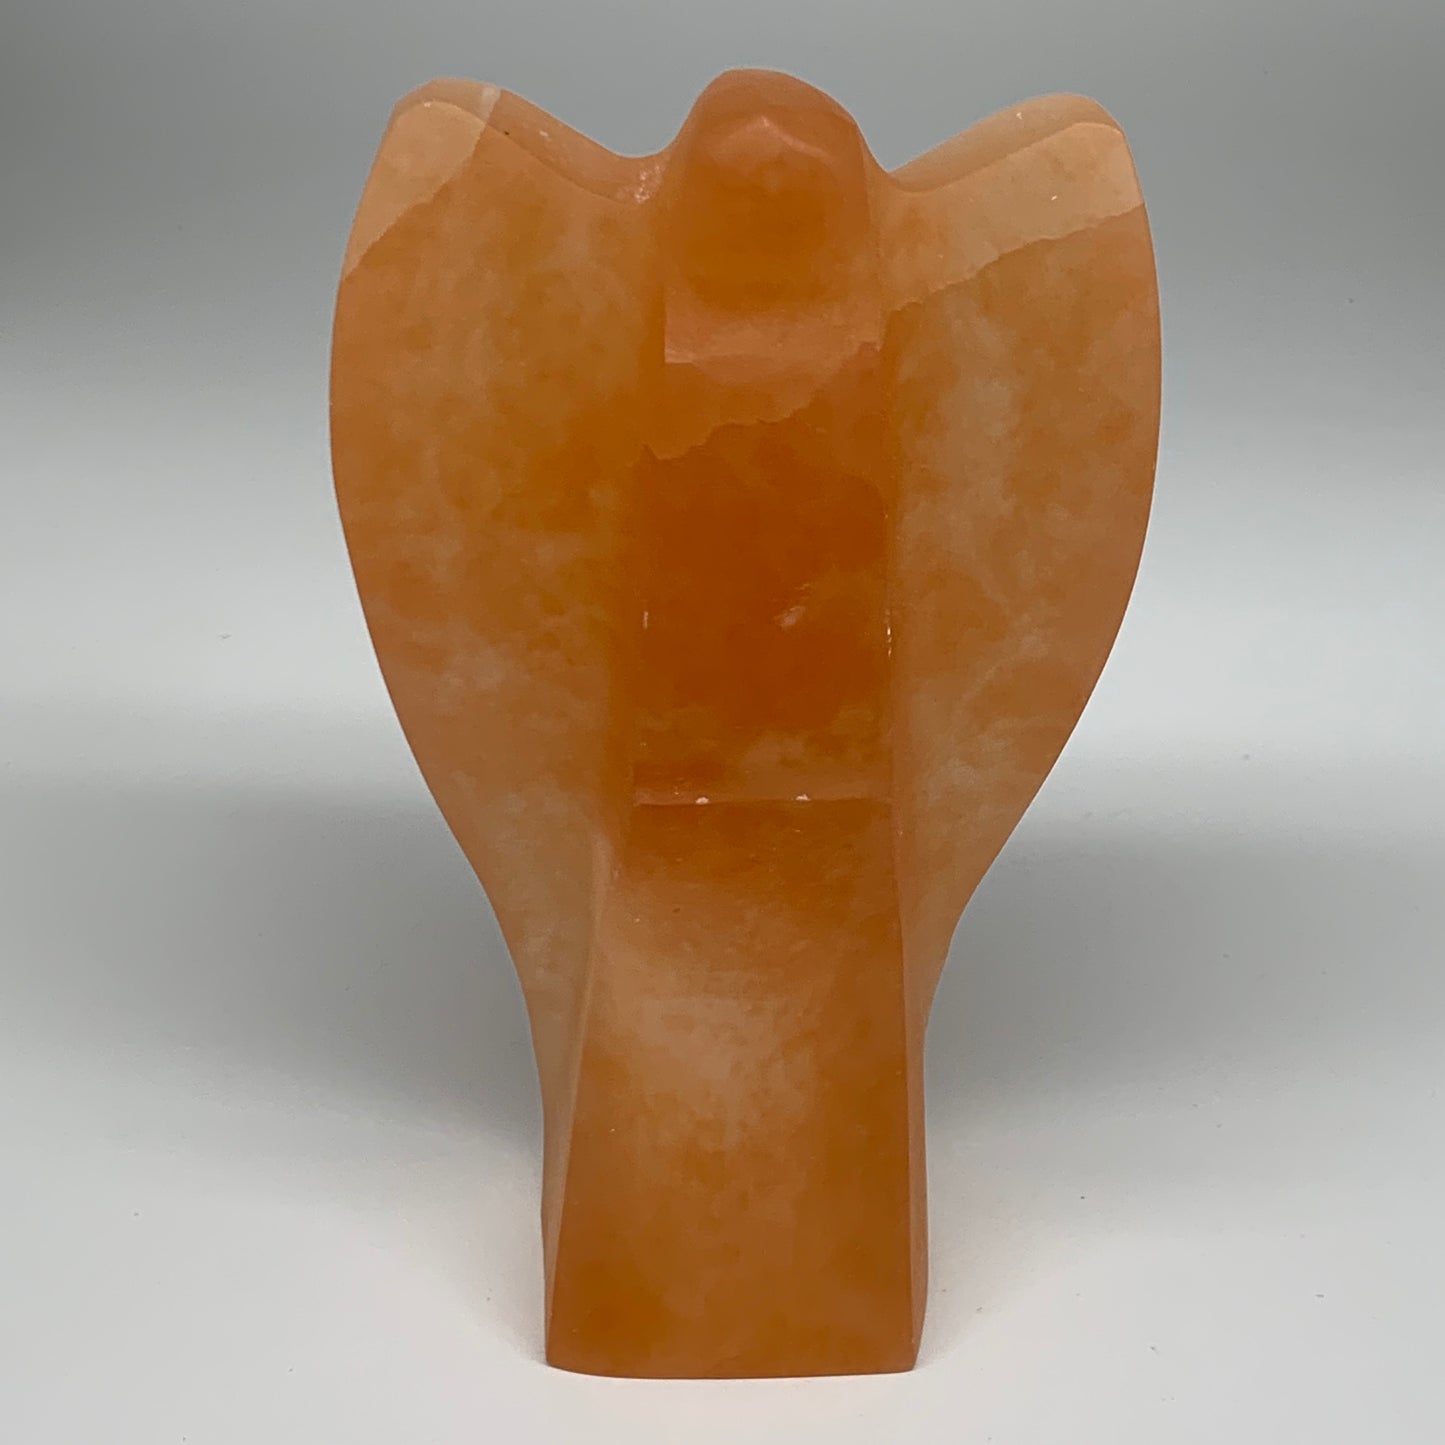 1756g, 8"x4.8"x2.5" Orange Selenite (Satin Spar) Angel Lamps @Morocco,B9438